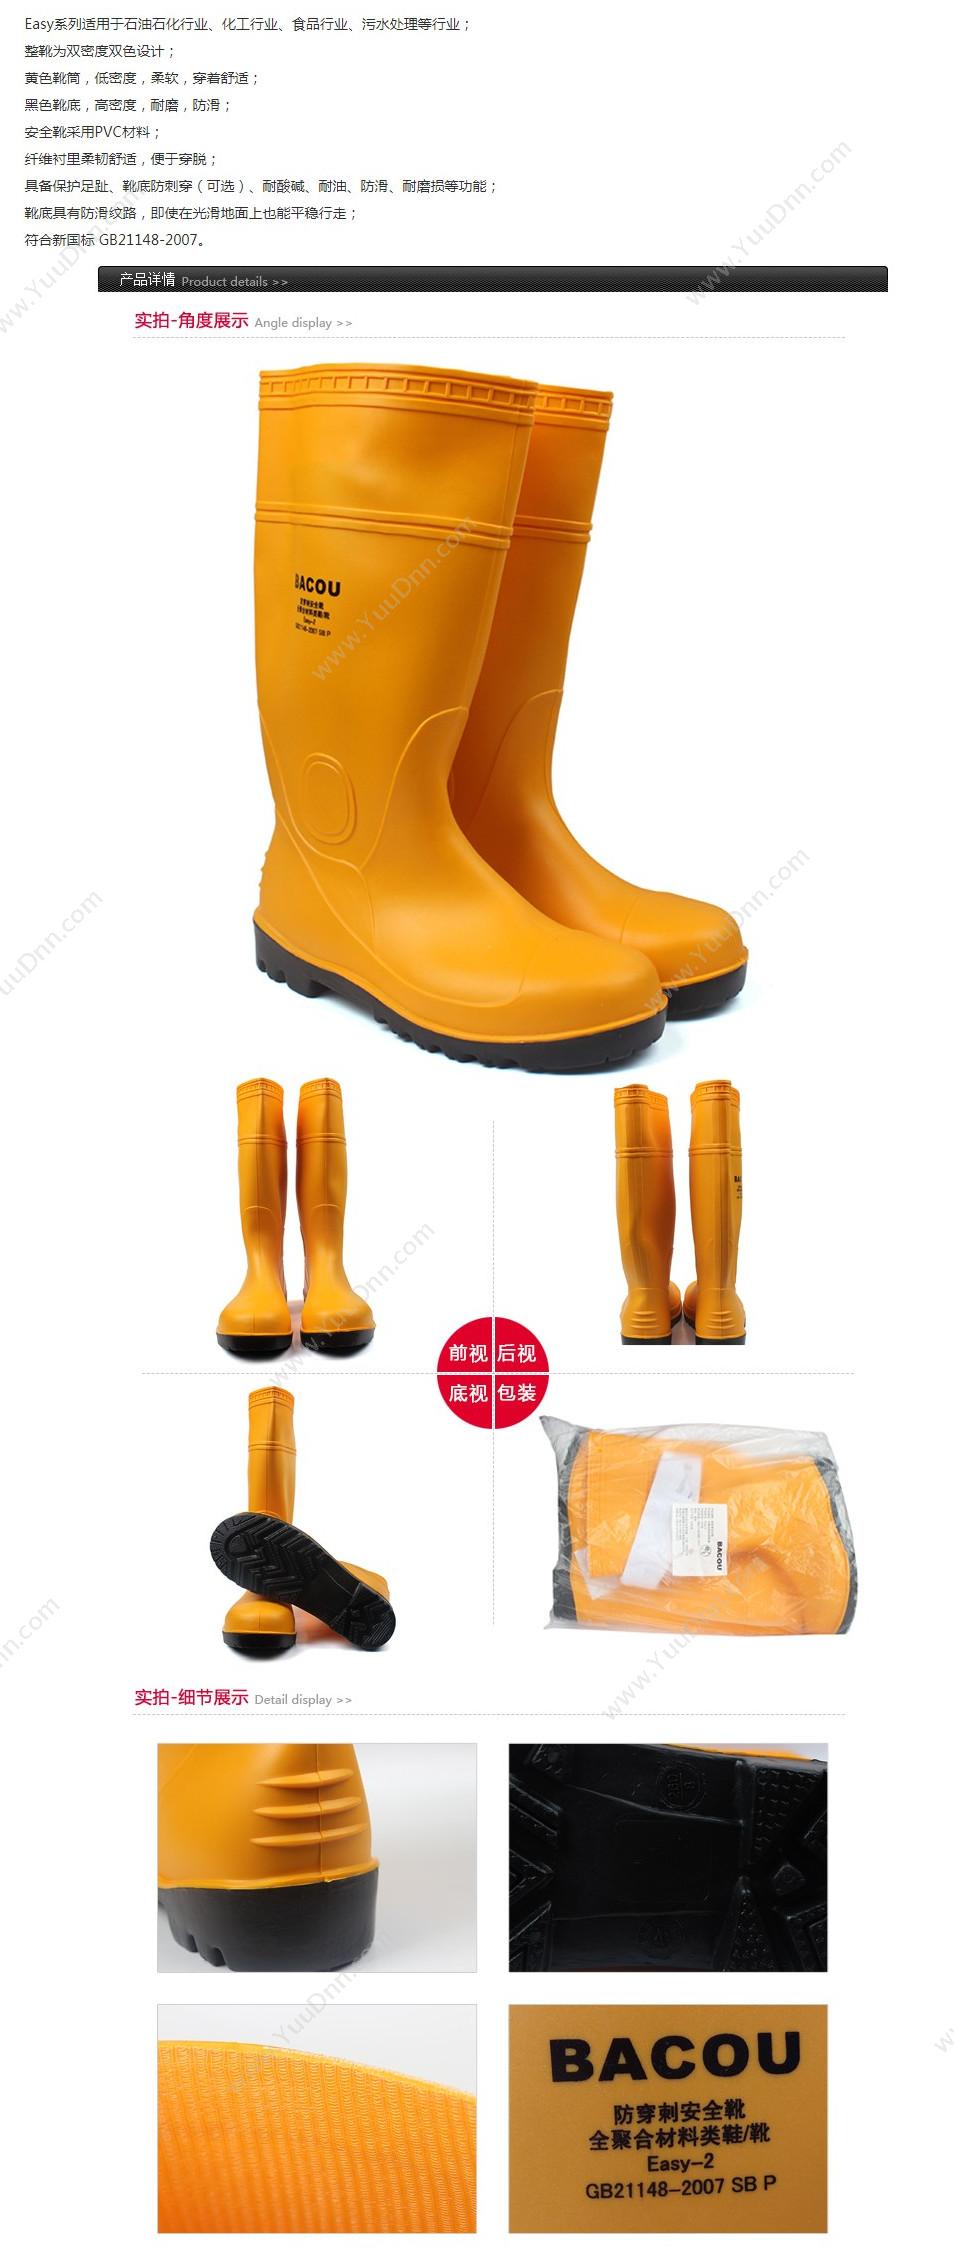 霍尼韦尔 Honeywell 75708 PVC 安全靴Easy 轻型 47 橘黄色 10双/箱 轻便鞋安全靴